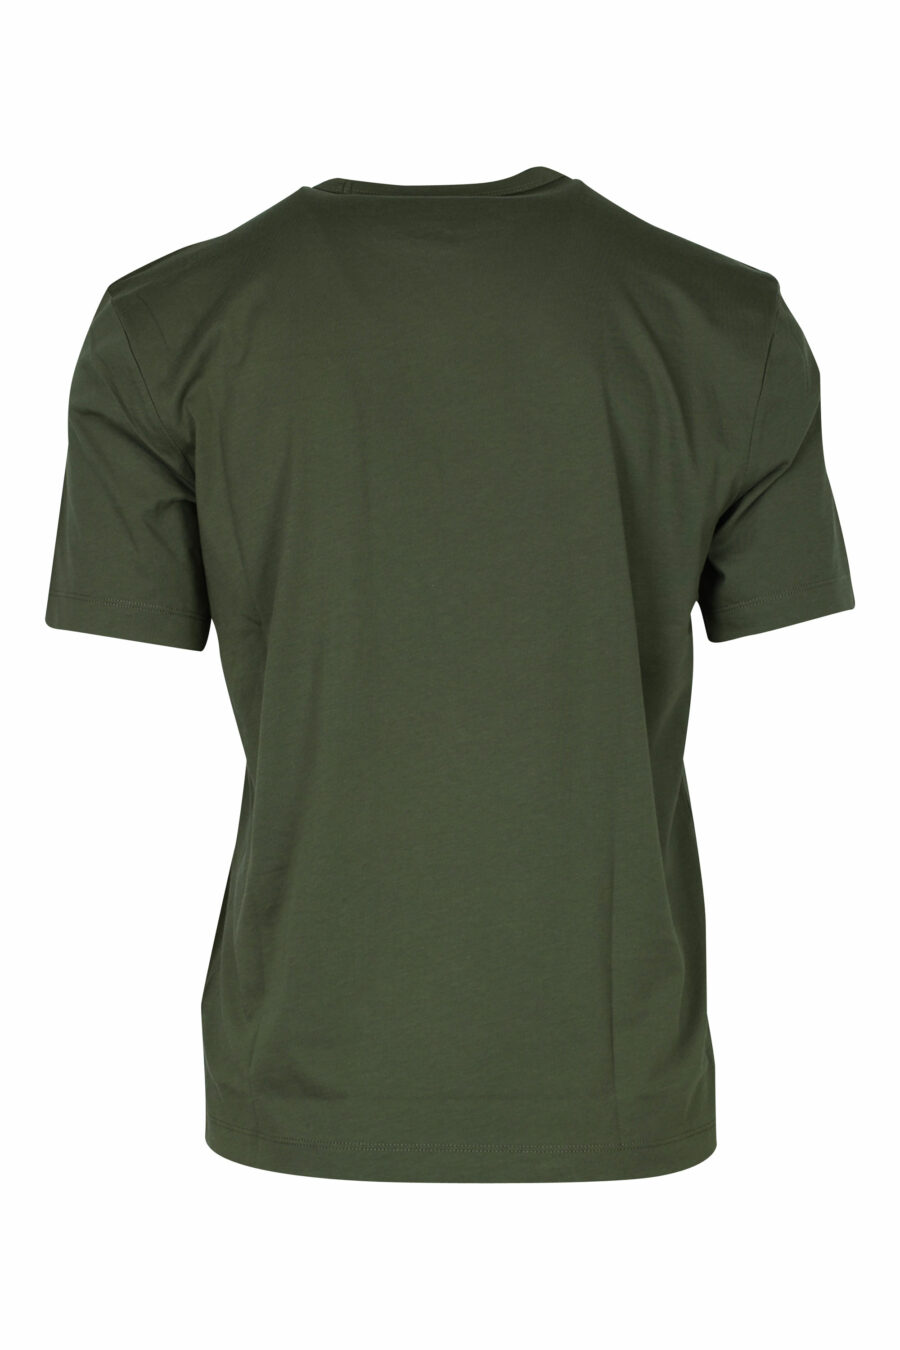 T-shirt vert militaire avec mini poche imprimée du logo - 8058610799816 1